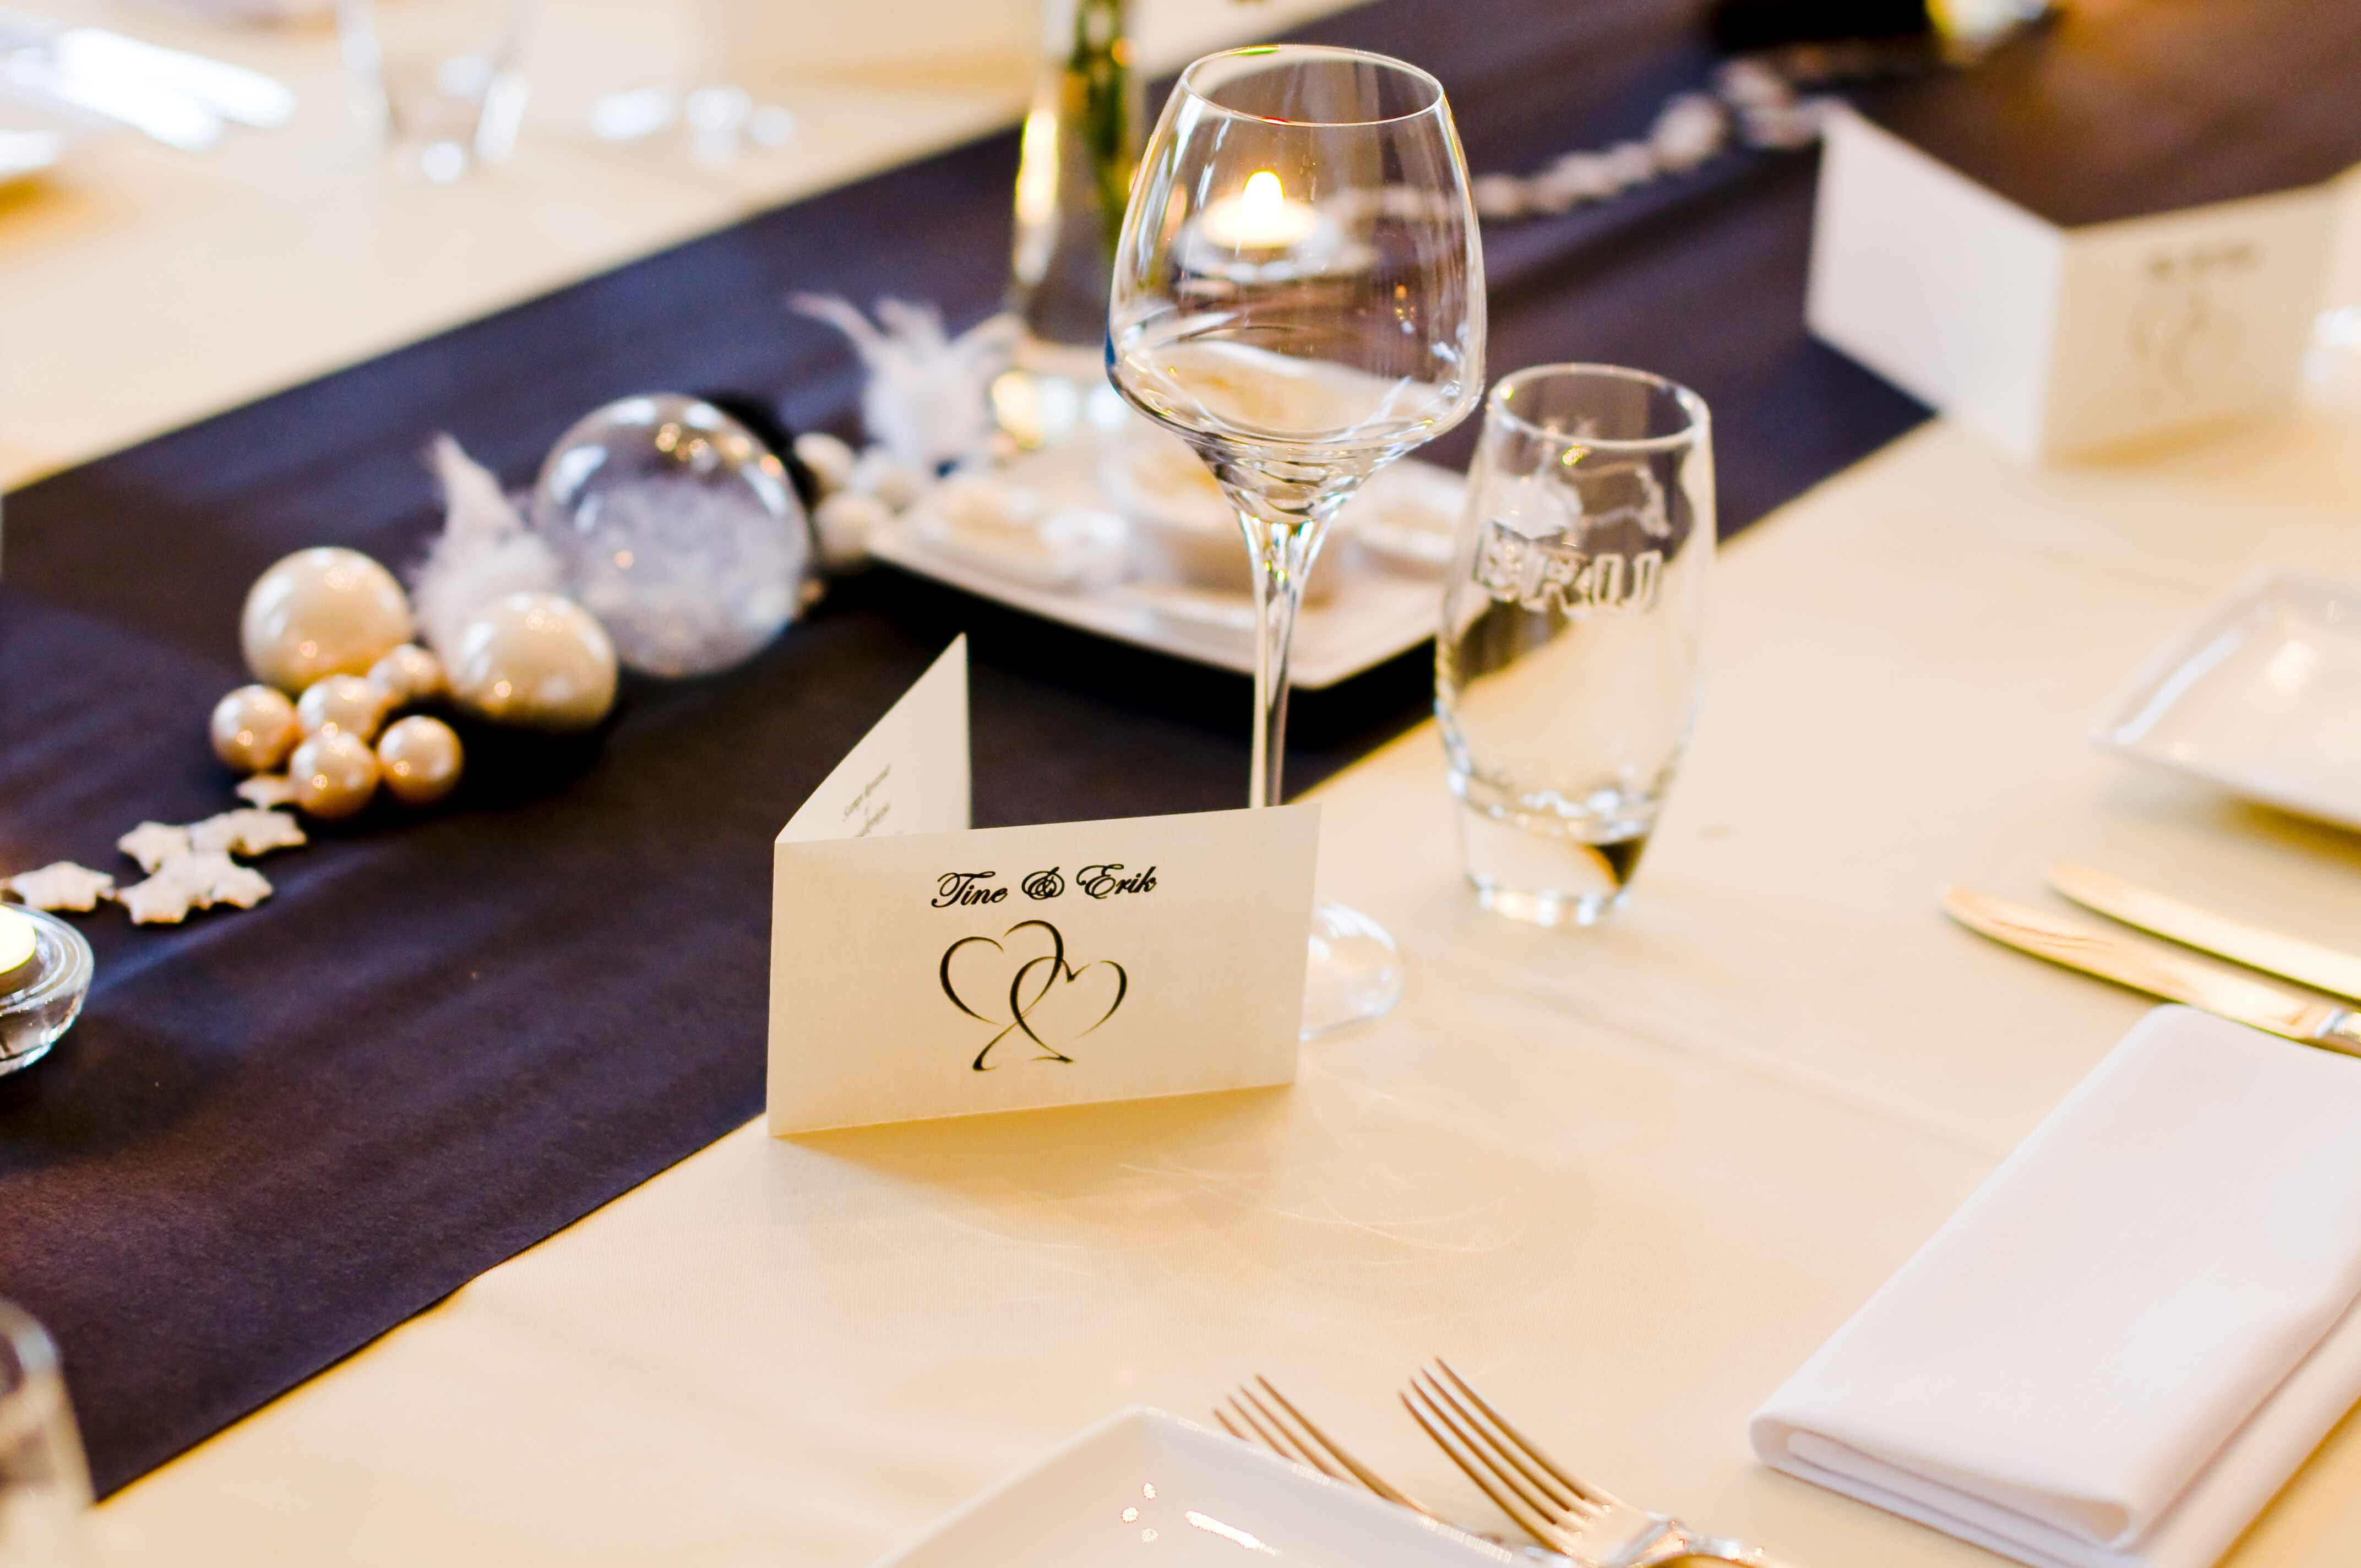 Tischkarten Hochzeit Ideen
 Tischkarten zur Hochzeit – Ideen Tipps & Beispiele